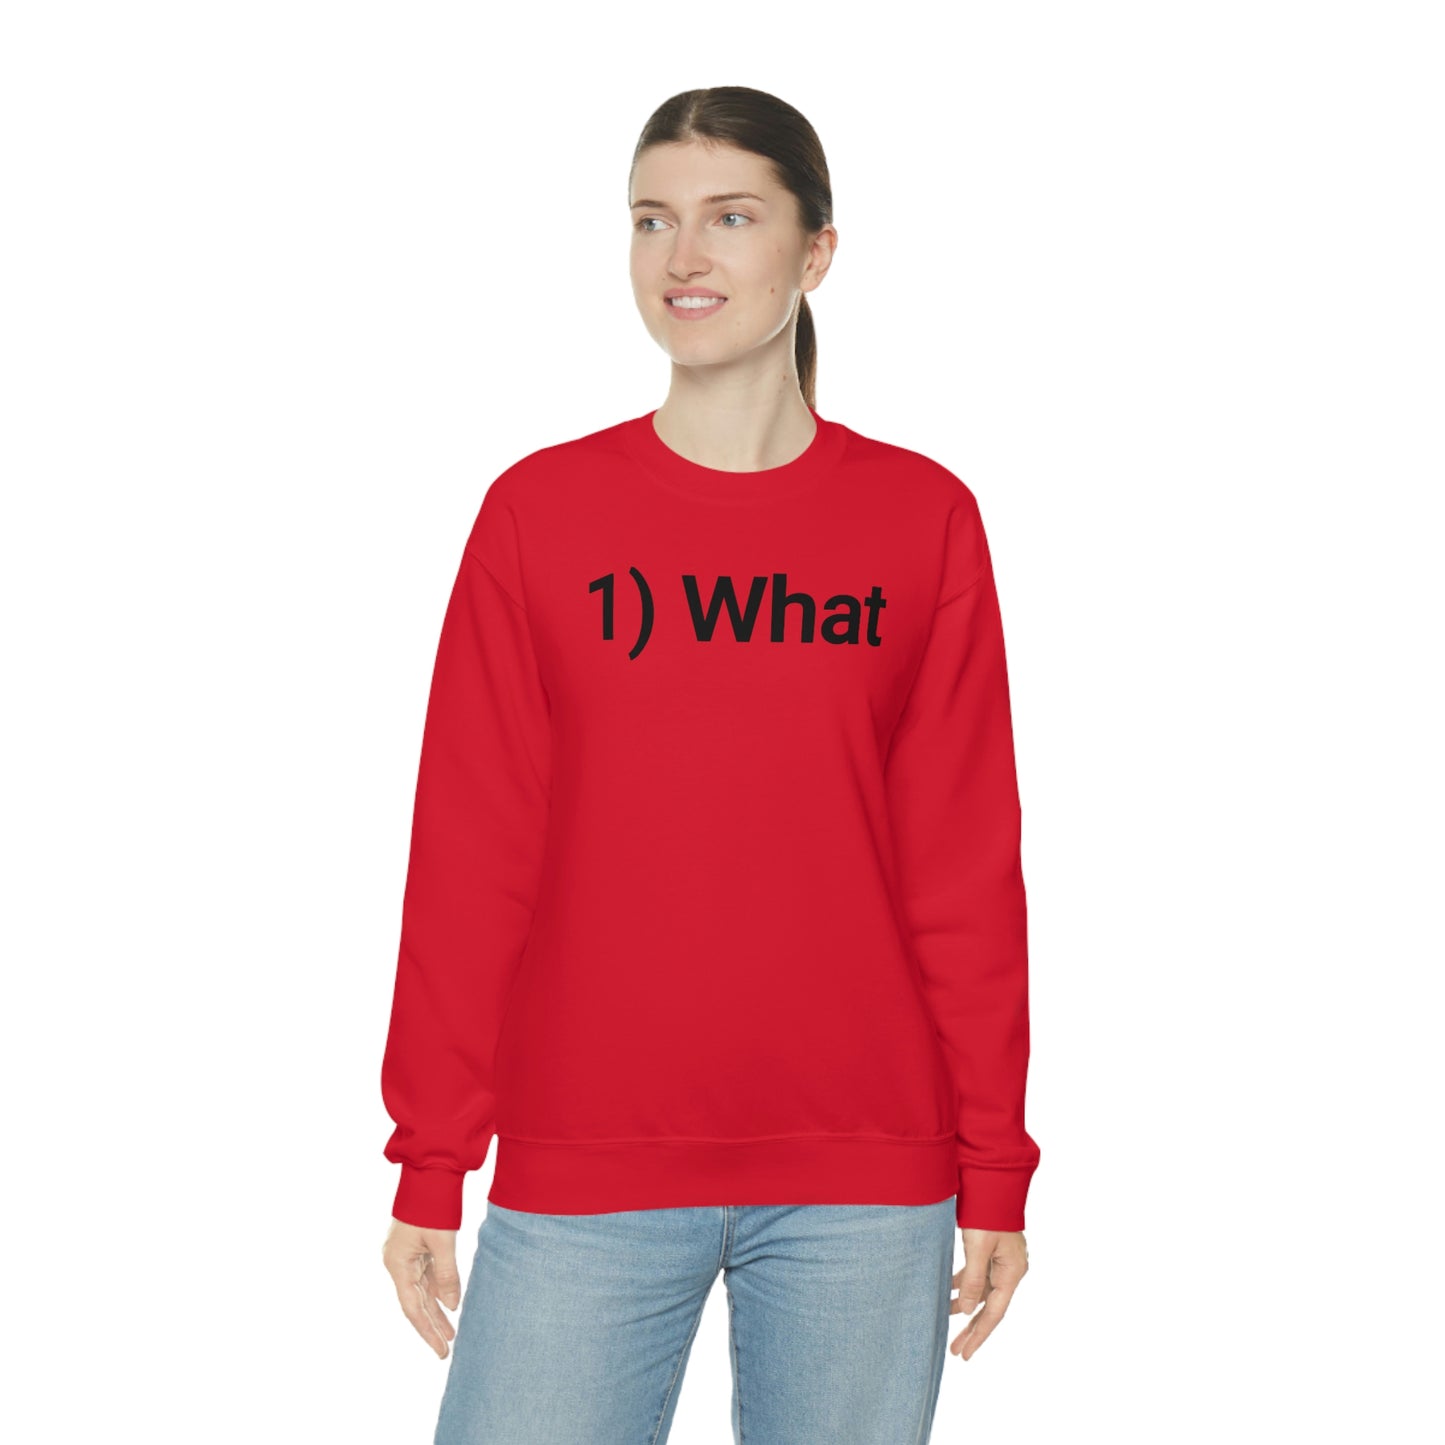 SBF 1) What Crewneck Sweatshirt